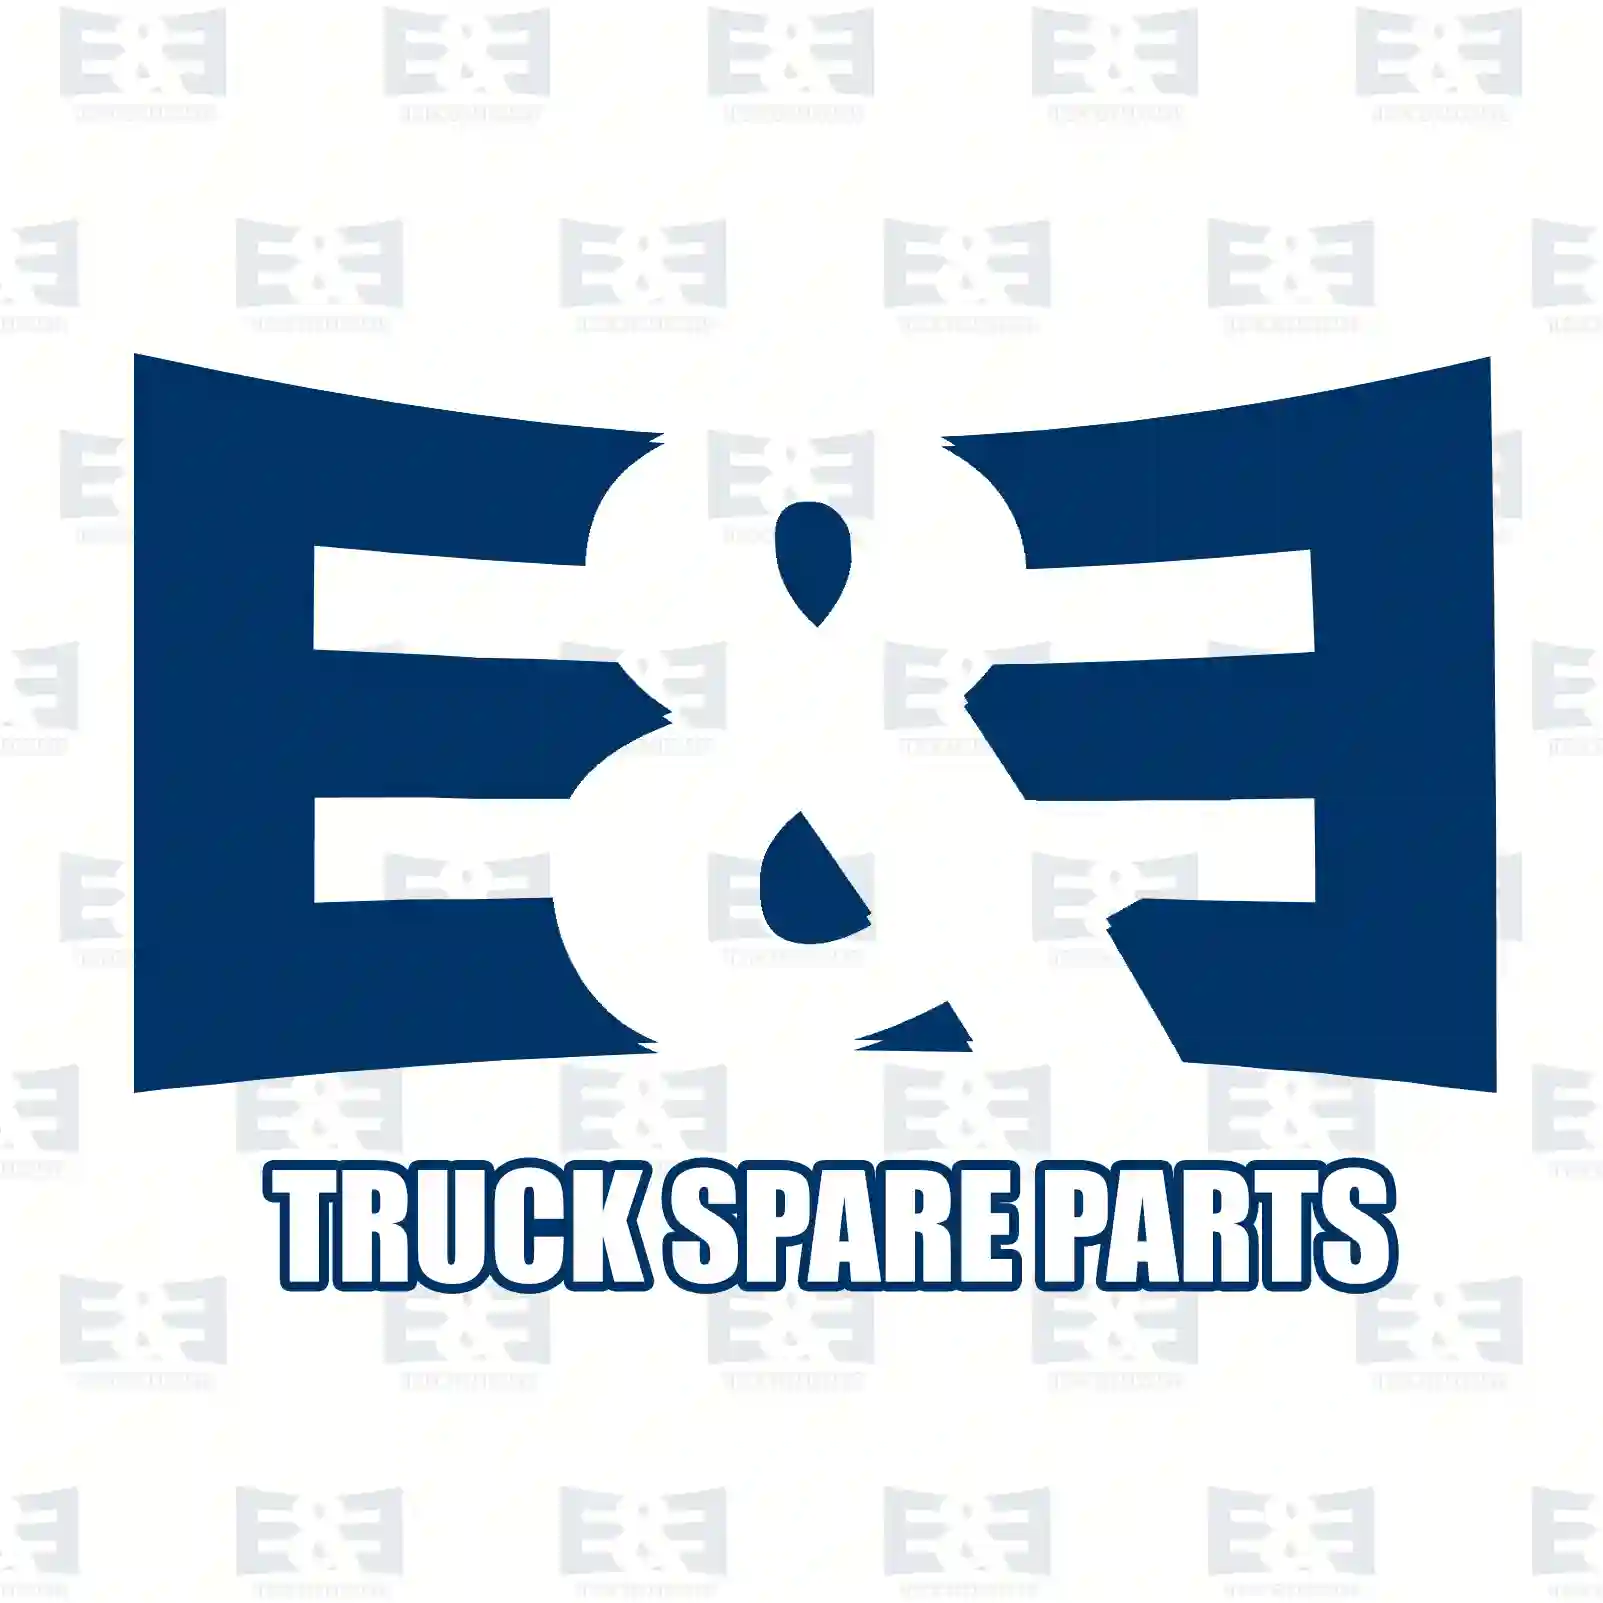 Foot brake valve, EBS, 2E2296895, 81521306268 ||  2E2296895 E&E Truck Spare Parts | Truck Spare Parts, Auotomotive Spare Parts Foot brake valve, EBS, 2E2296895, 81521306268 ||  2E2296895 E&E Truck Spare Parts | Truck Spare Parts, Auotomotive Spare Parts